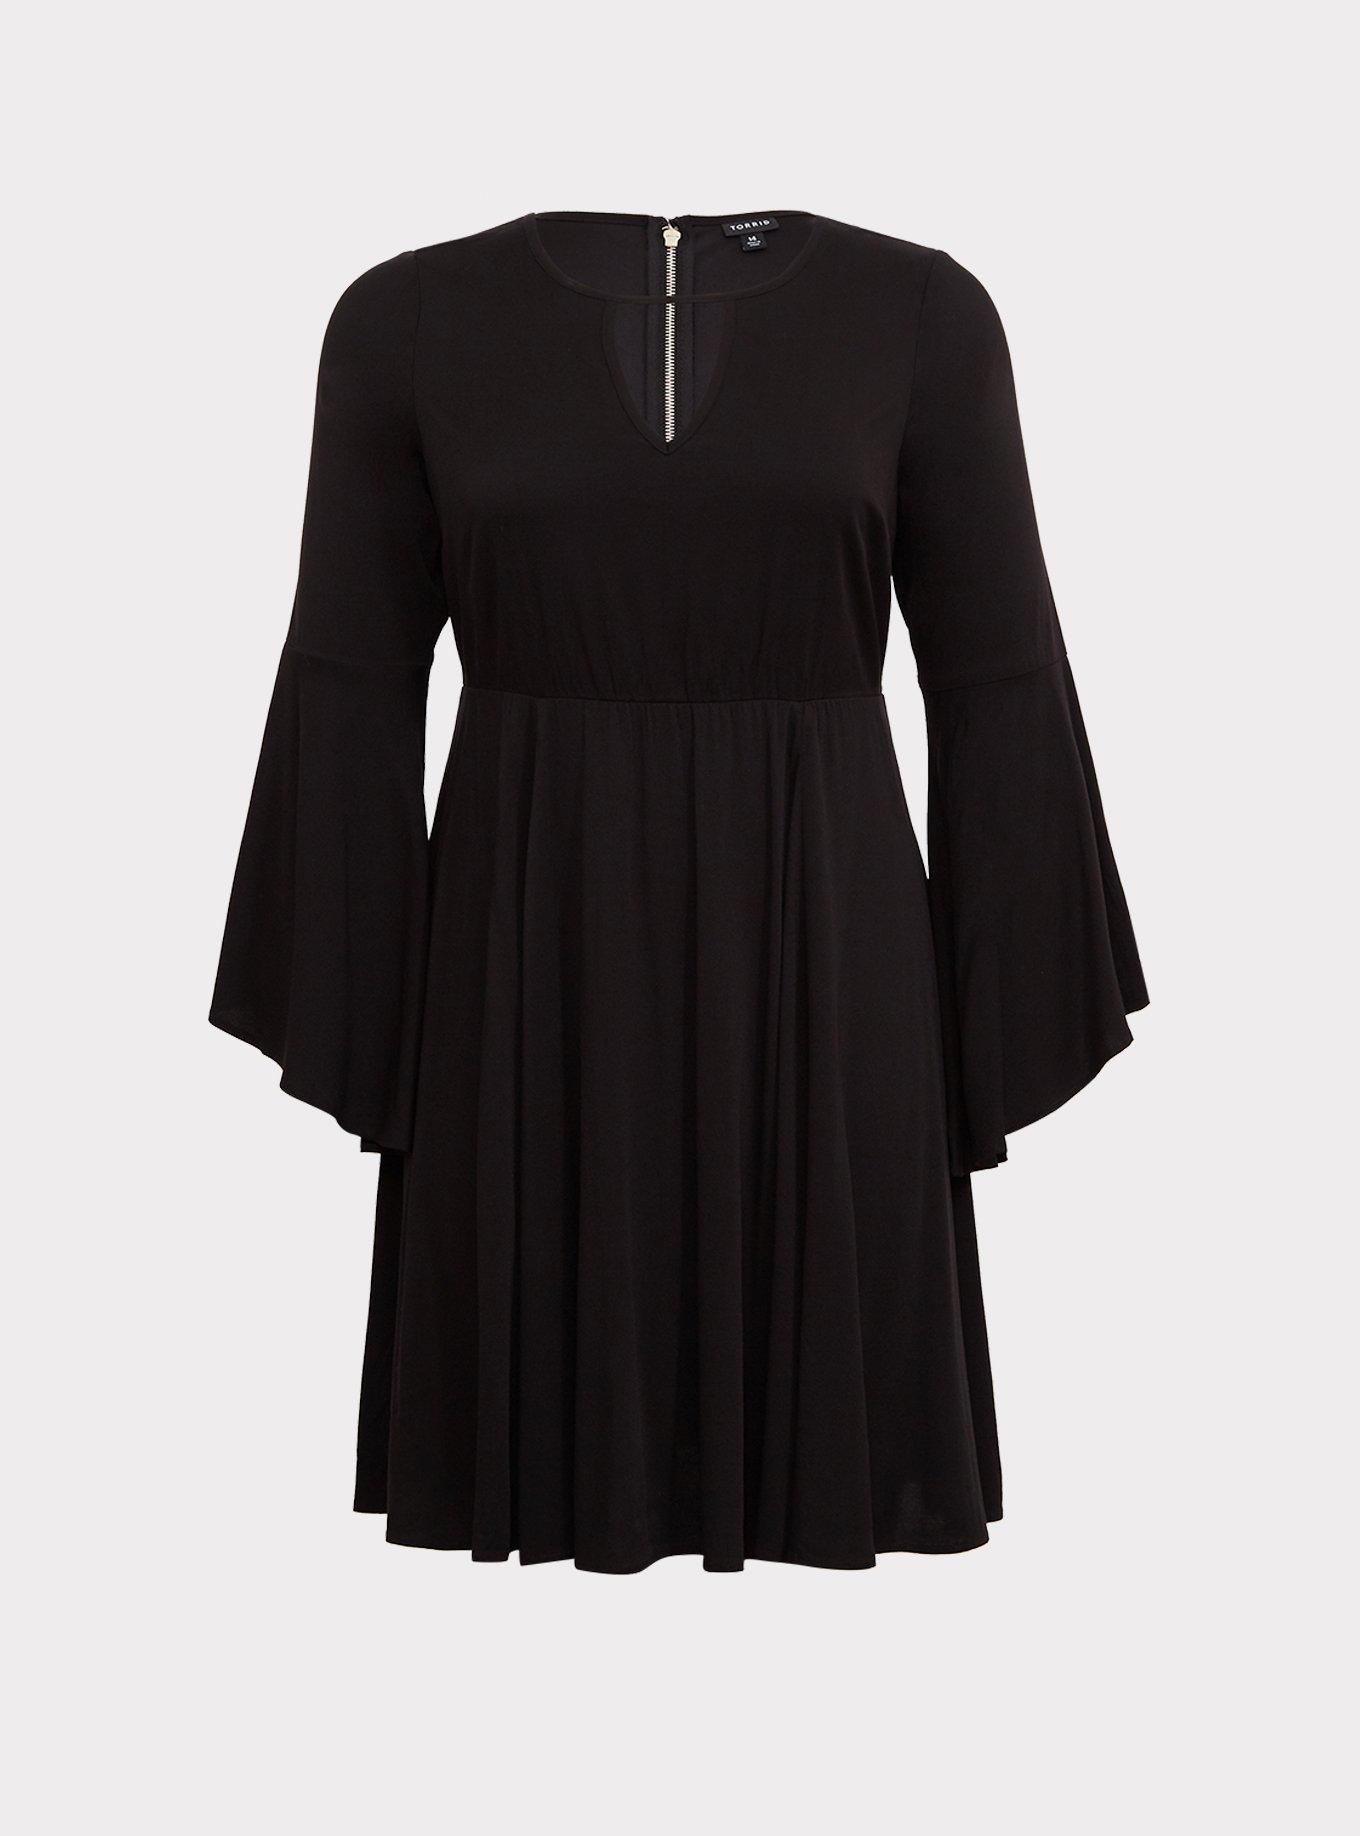 Plus Size - Black Challis Bell Sleeve Skater Dress - Torrid